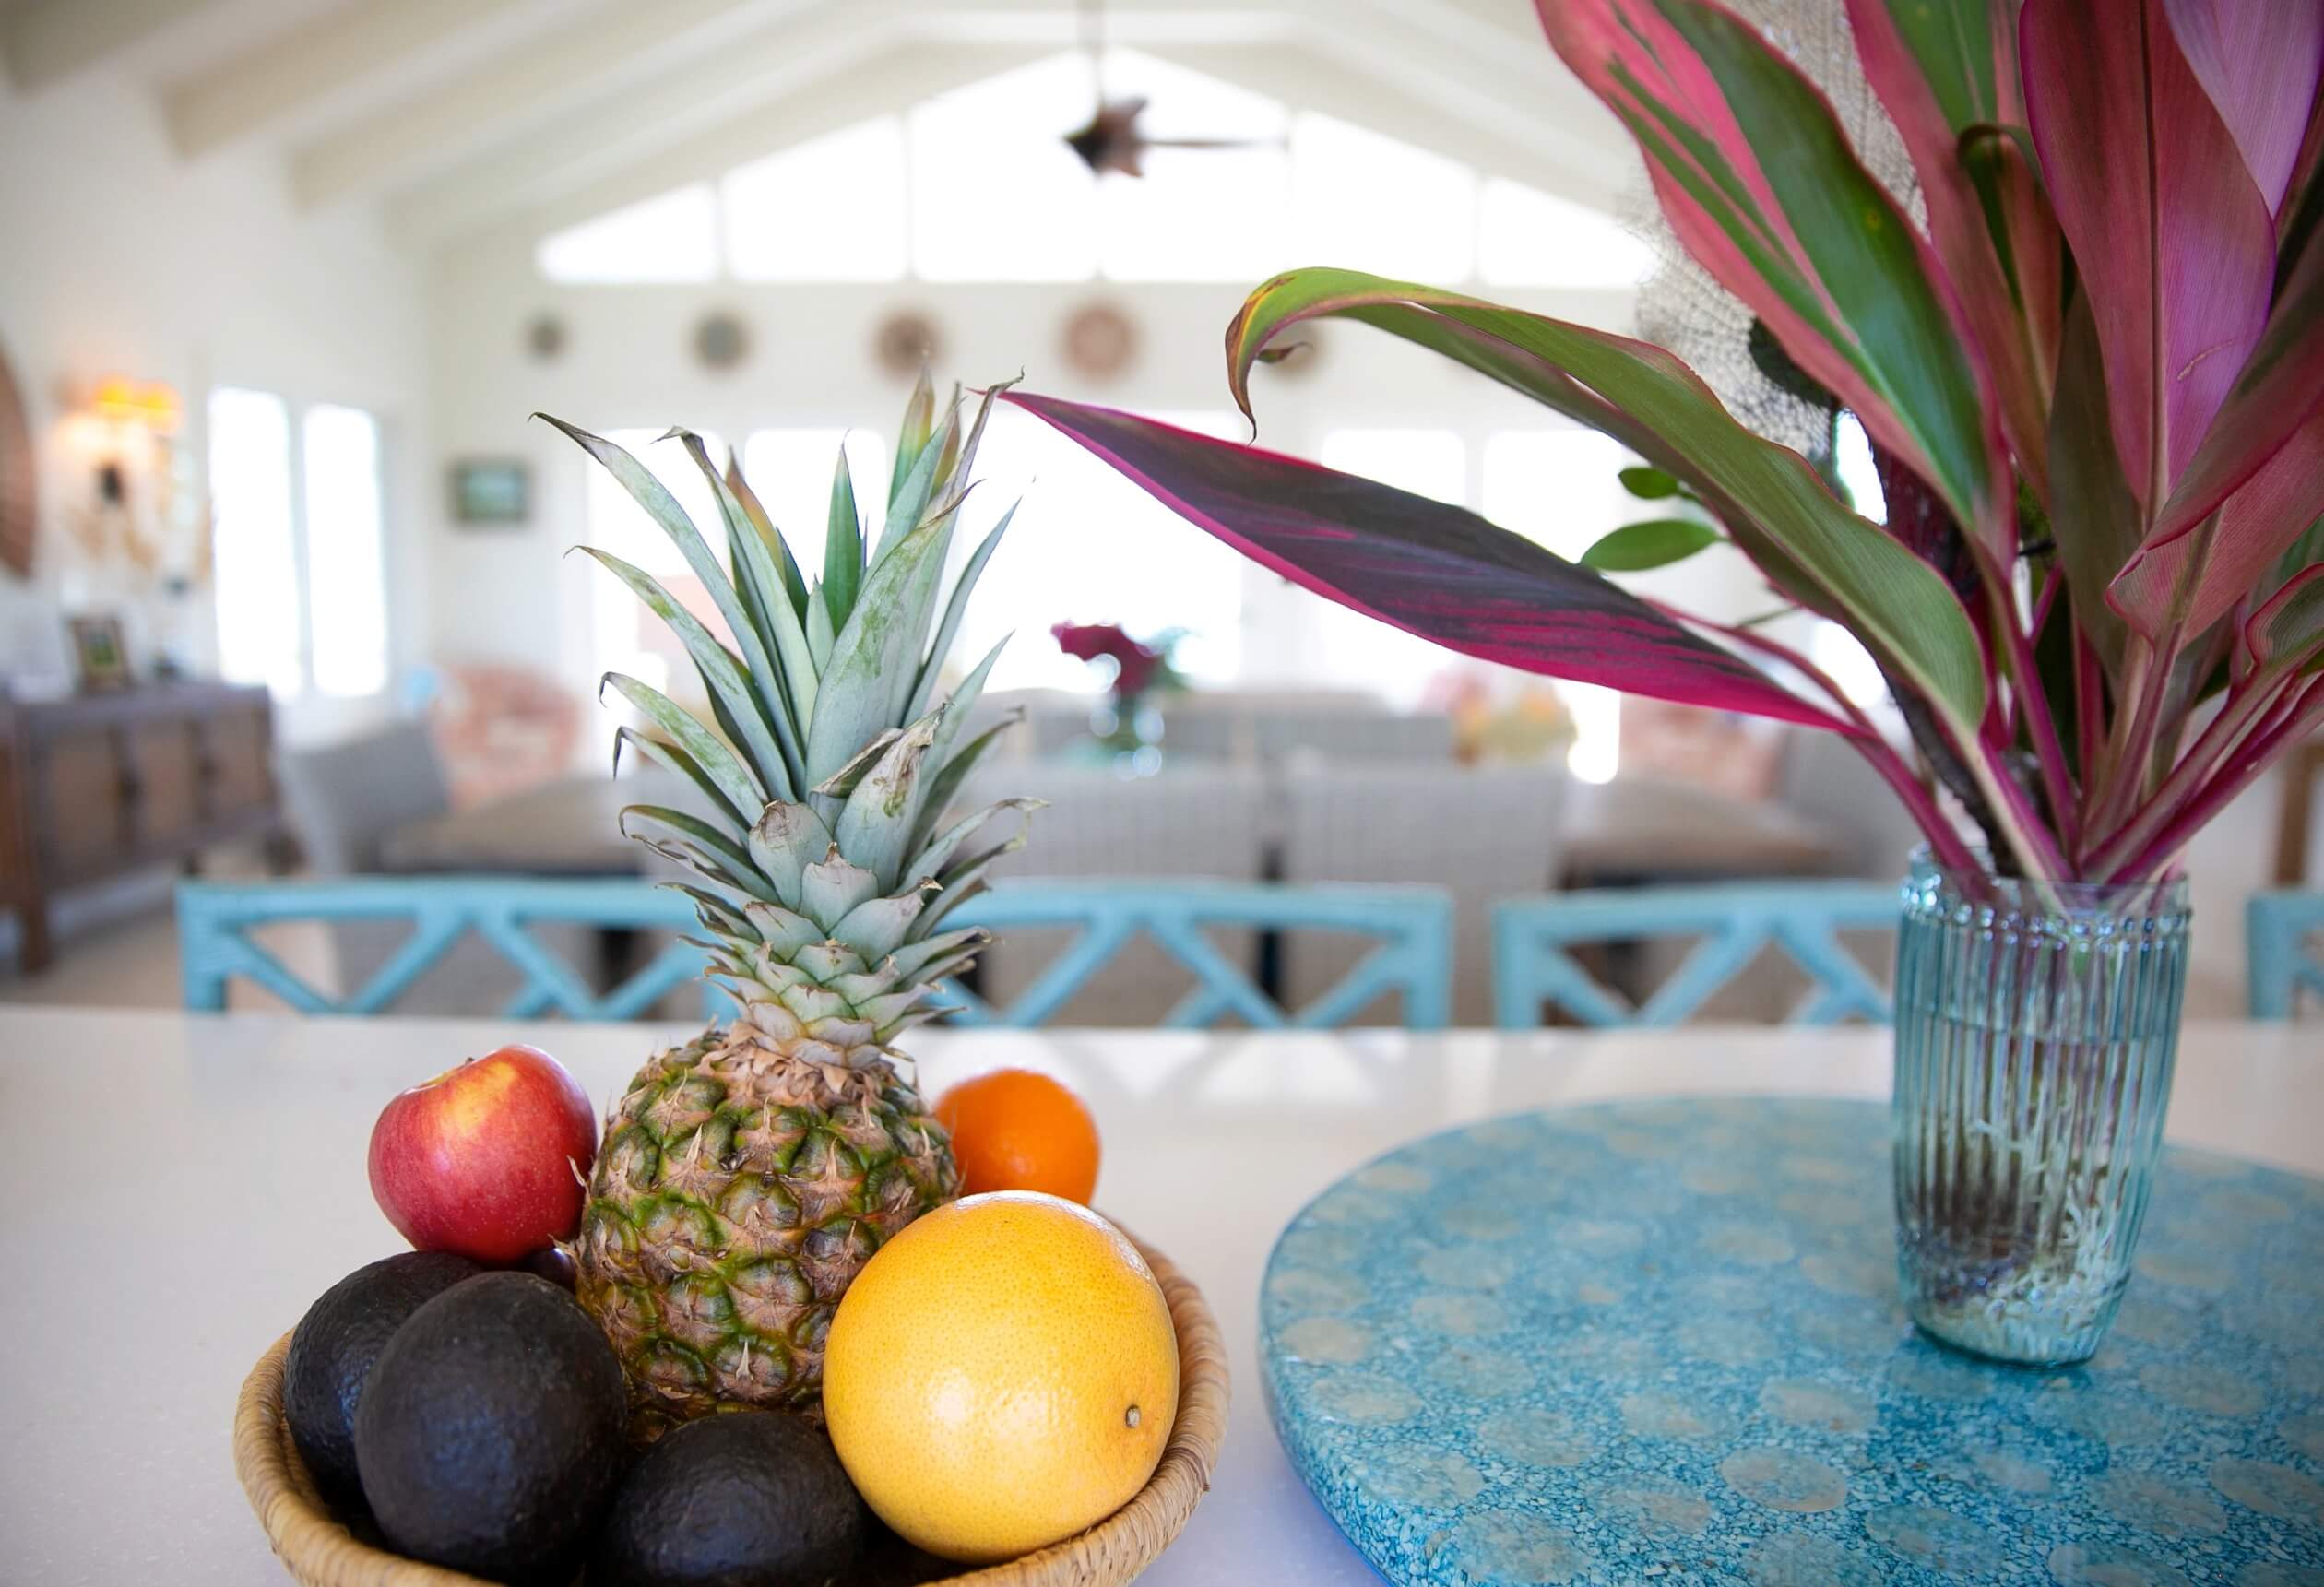 fruits in kitchen Bahari house Great Exuma Bahamas